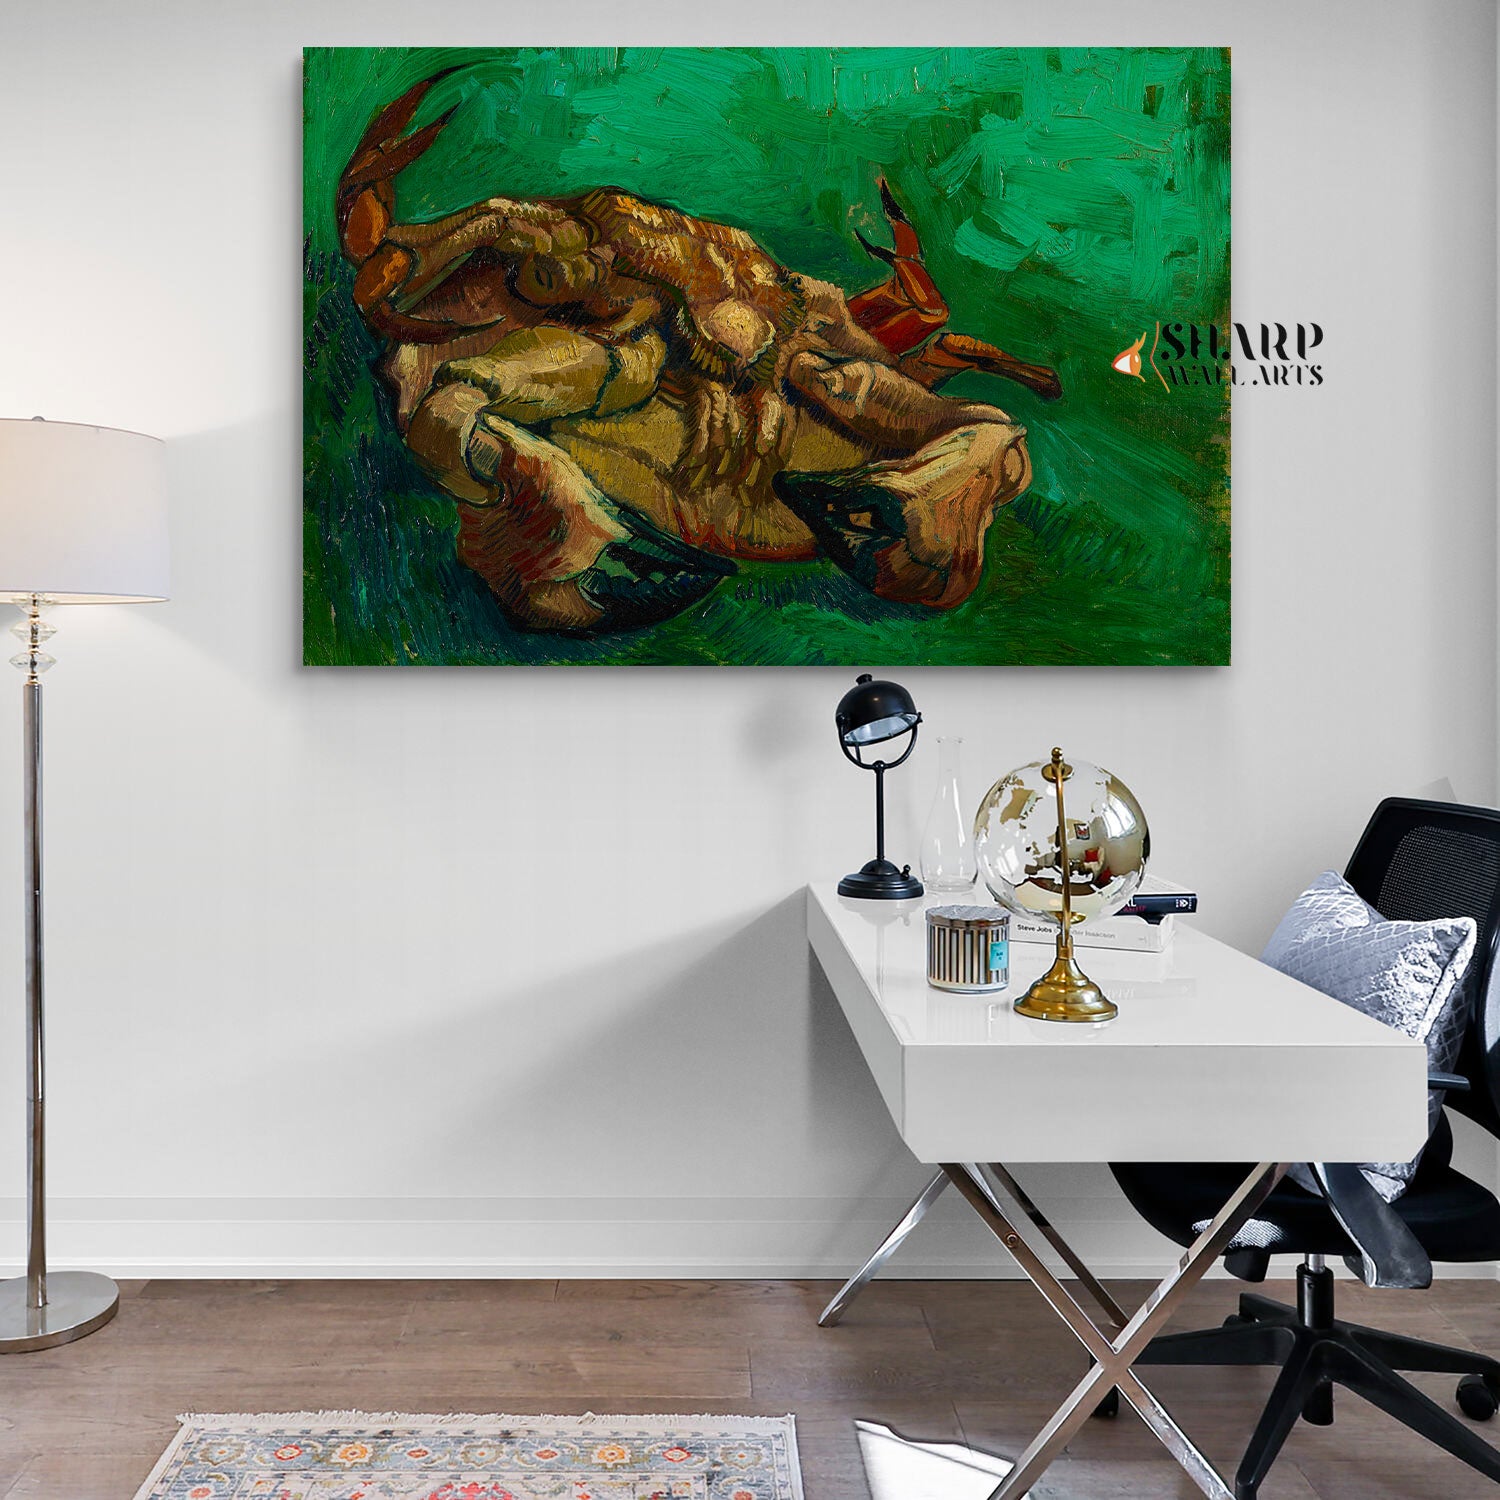 Vincent van Gogh A Crab On Its Back Canvas Wall Art